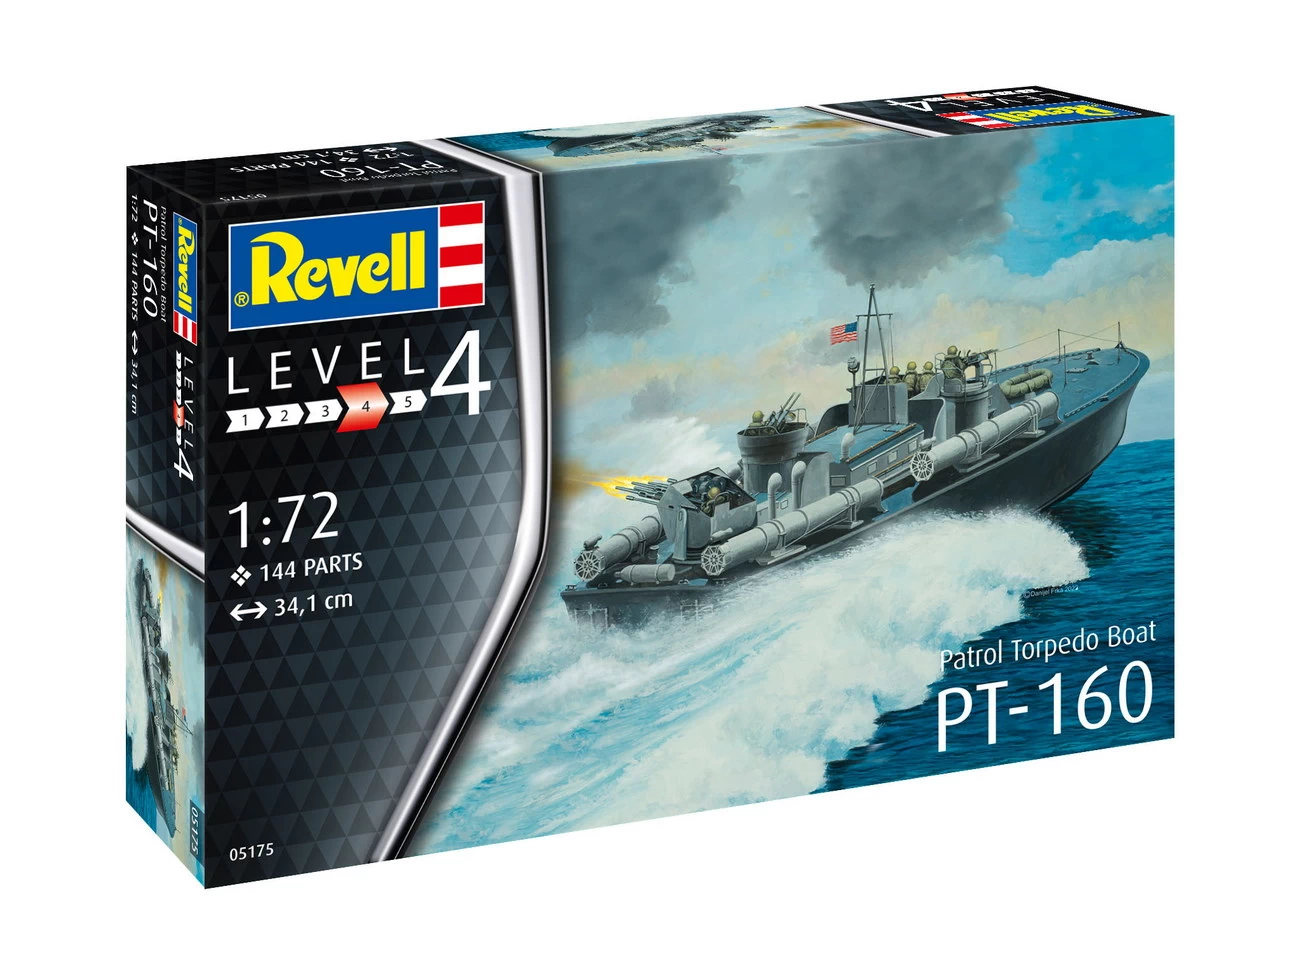 Revell 05175 - Patrol Torpedo Boat PT-559/PT-160